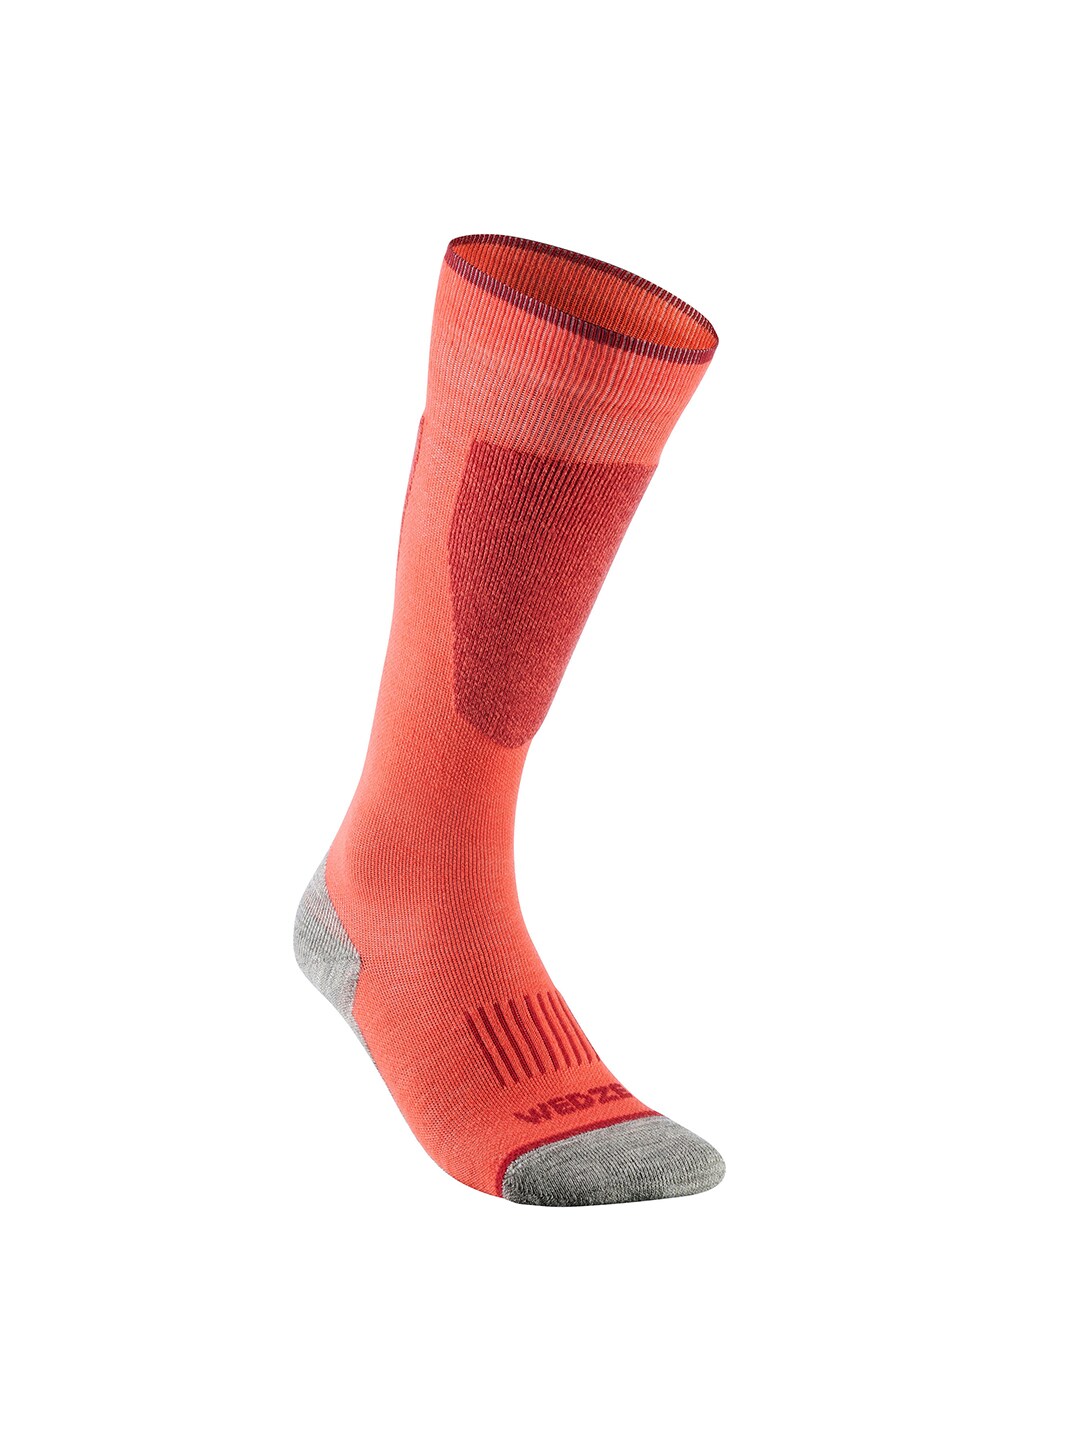 WEDZE By Decathlon Unisex Coral & Grey Colorblocked Woollen Ski Socks Price in India